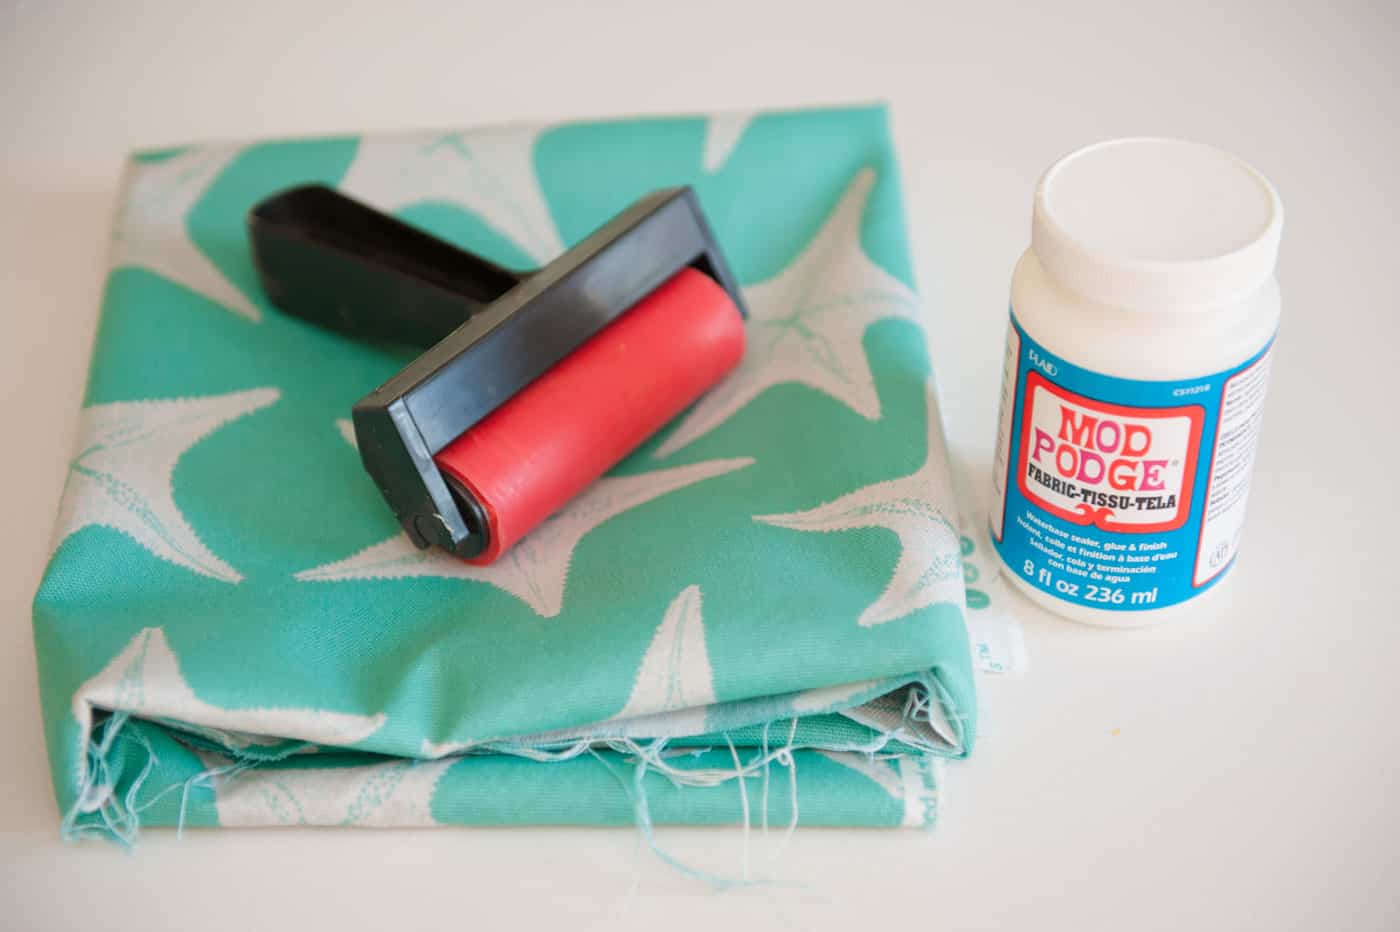 Starfish fabric, a Mod Podge brayer, and Mod Podge Fabric